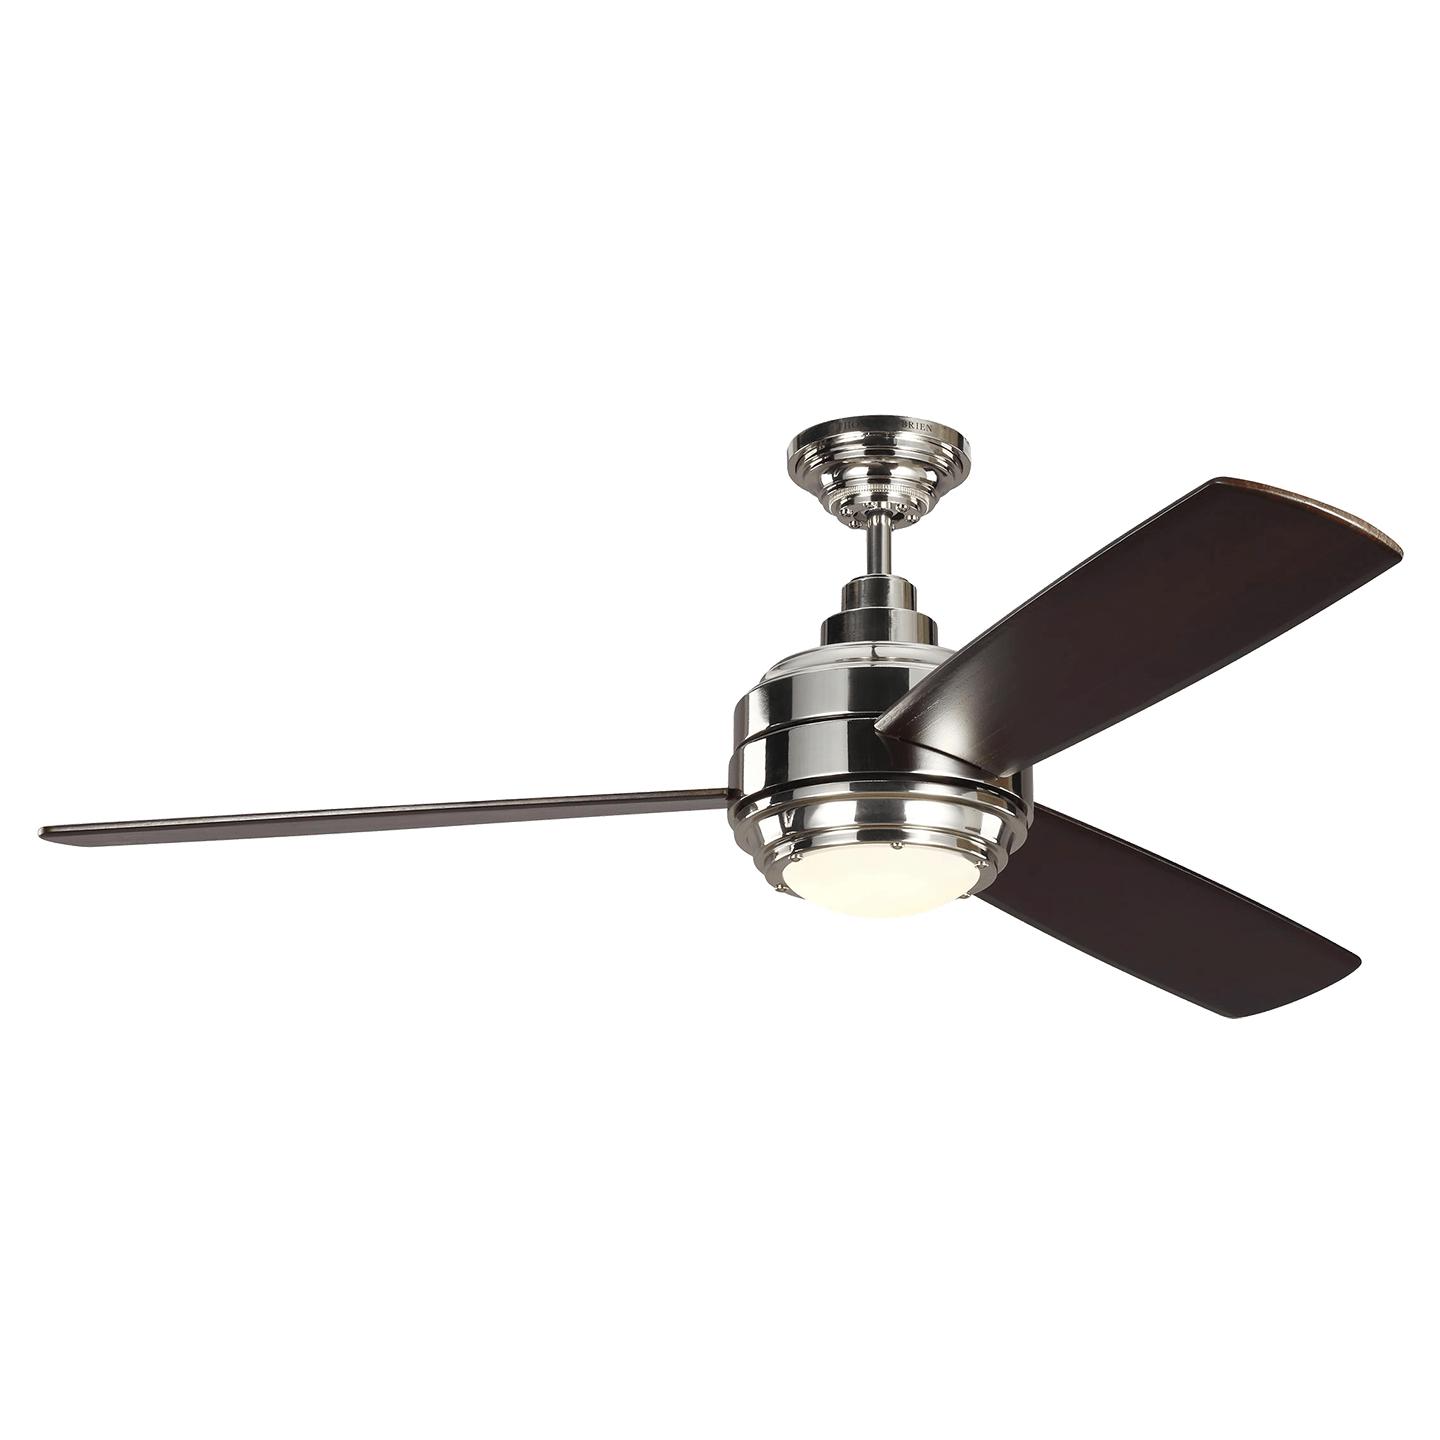 Купить Потолочный вентилятор Aerotour 56" Ceiling Fan в интернет-магазине roooms.ru